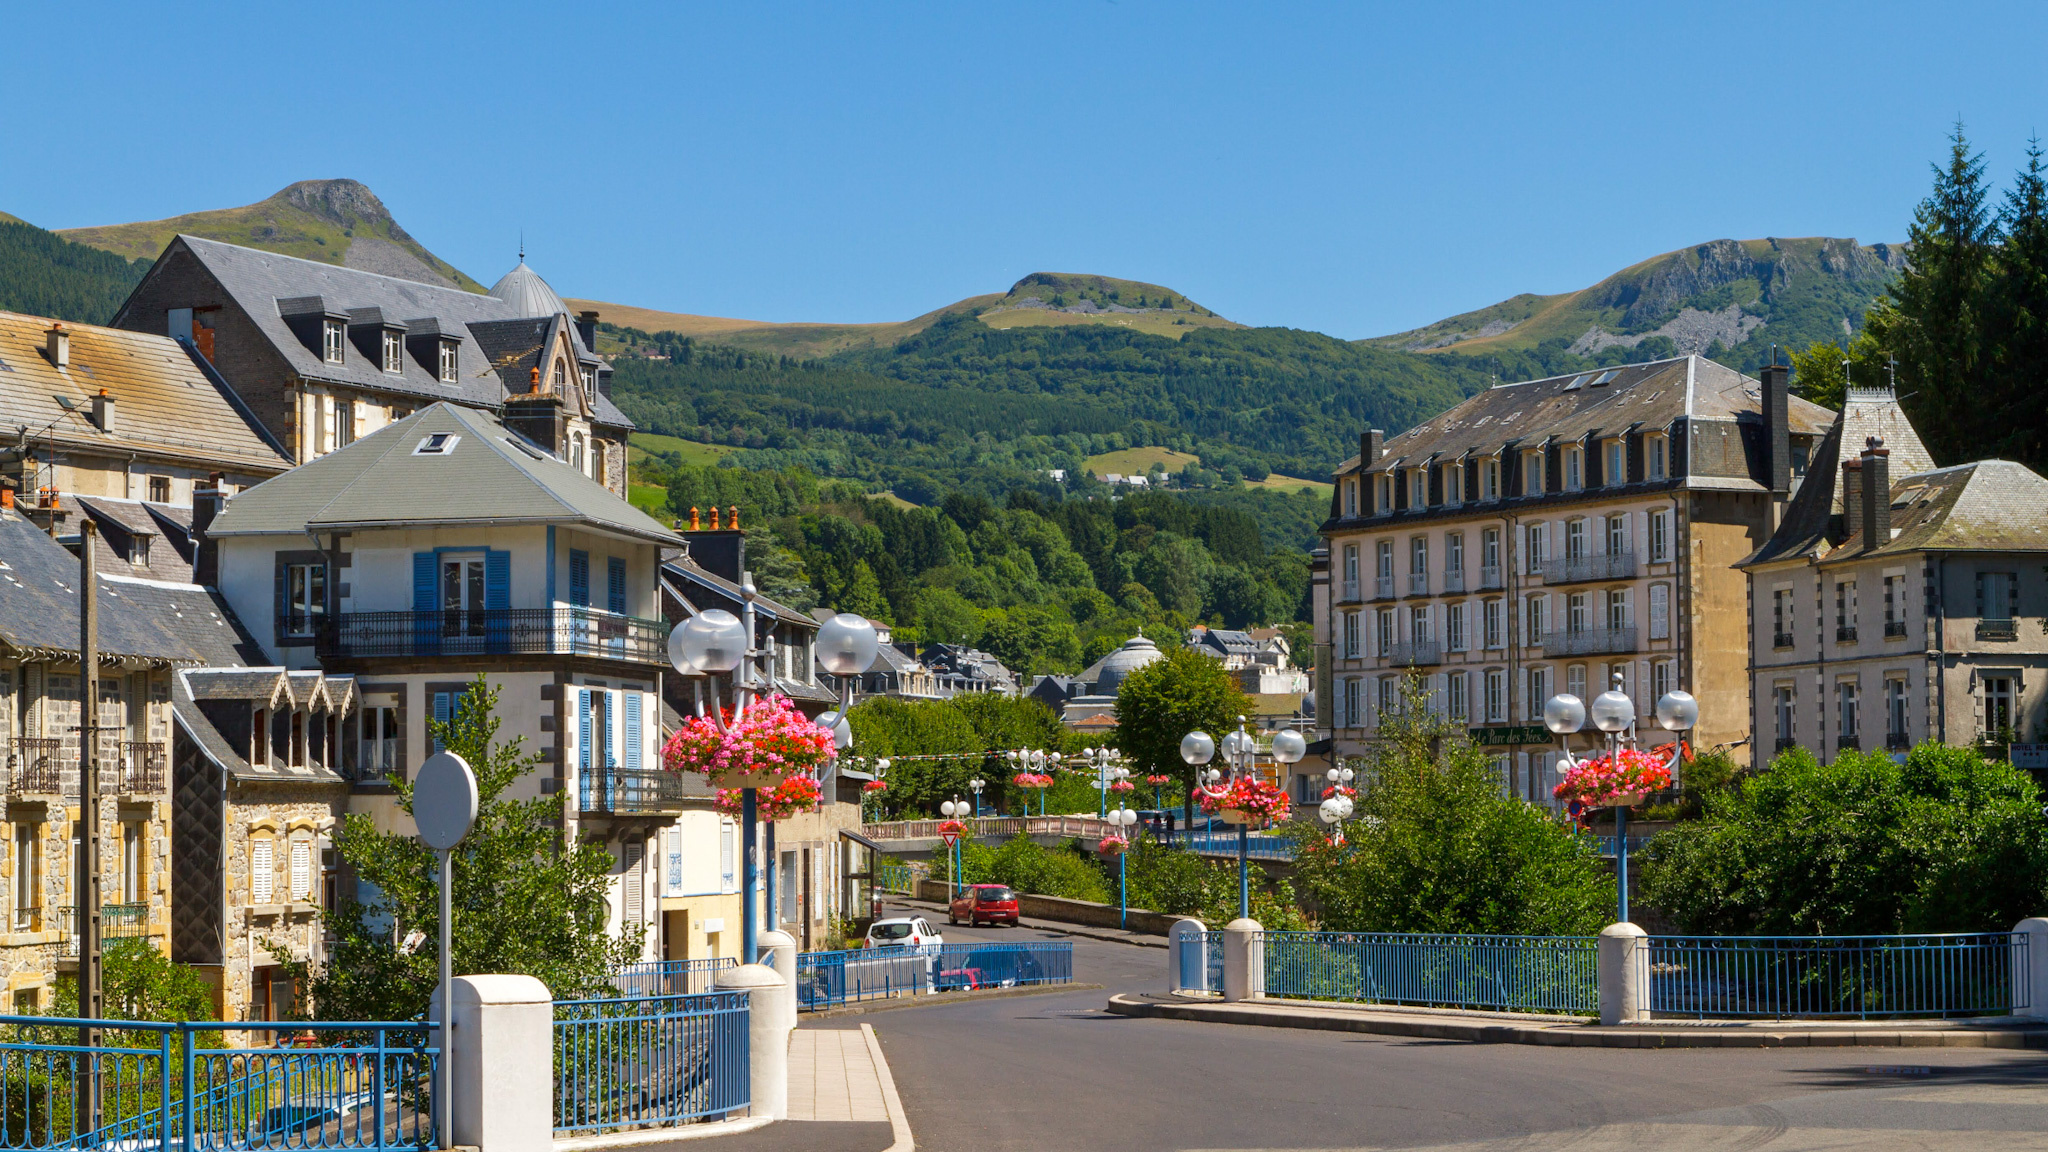 La Bourboule, town center of La Bourboule in the Massif du Sancy